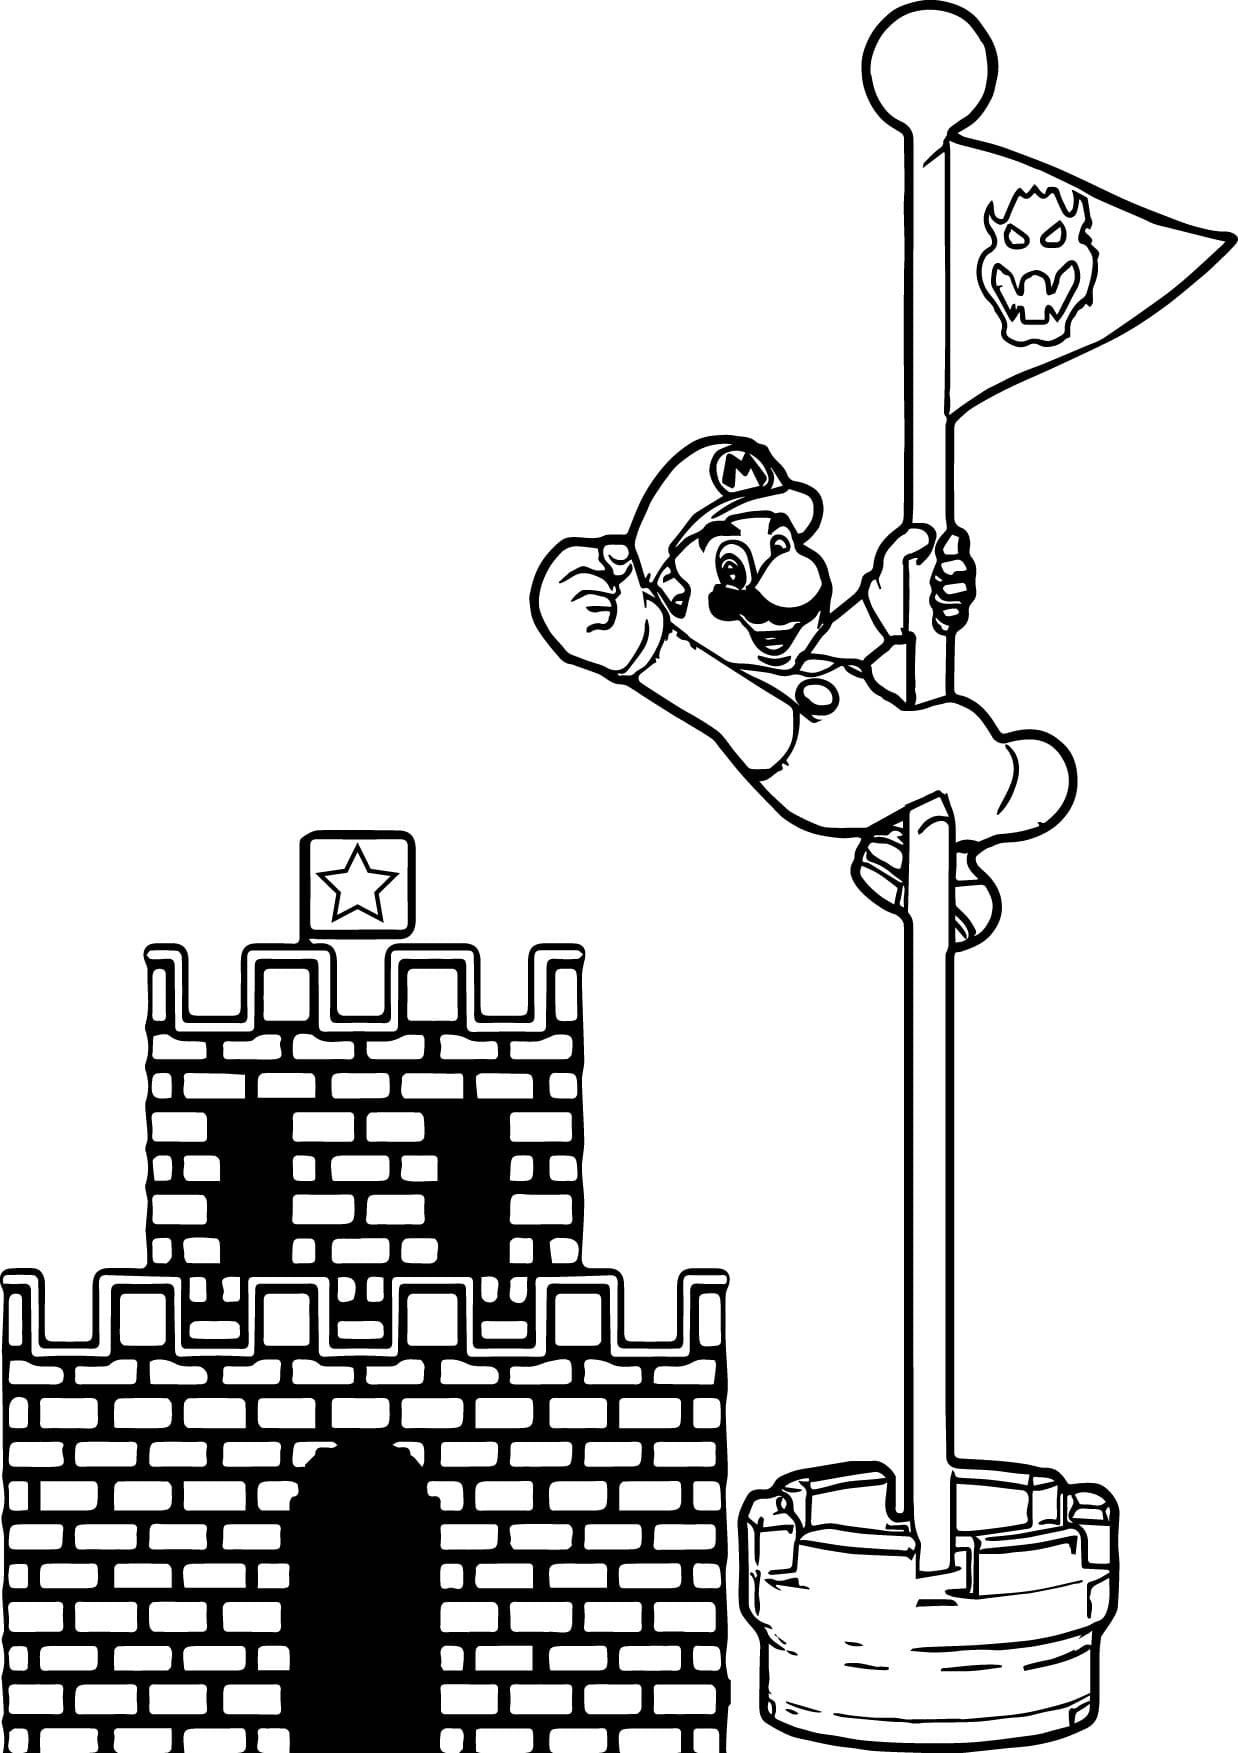 Desenho 16 de Super Mario para imprimir e colorir